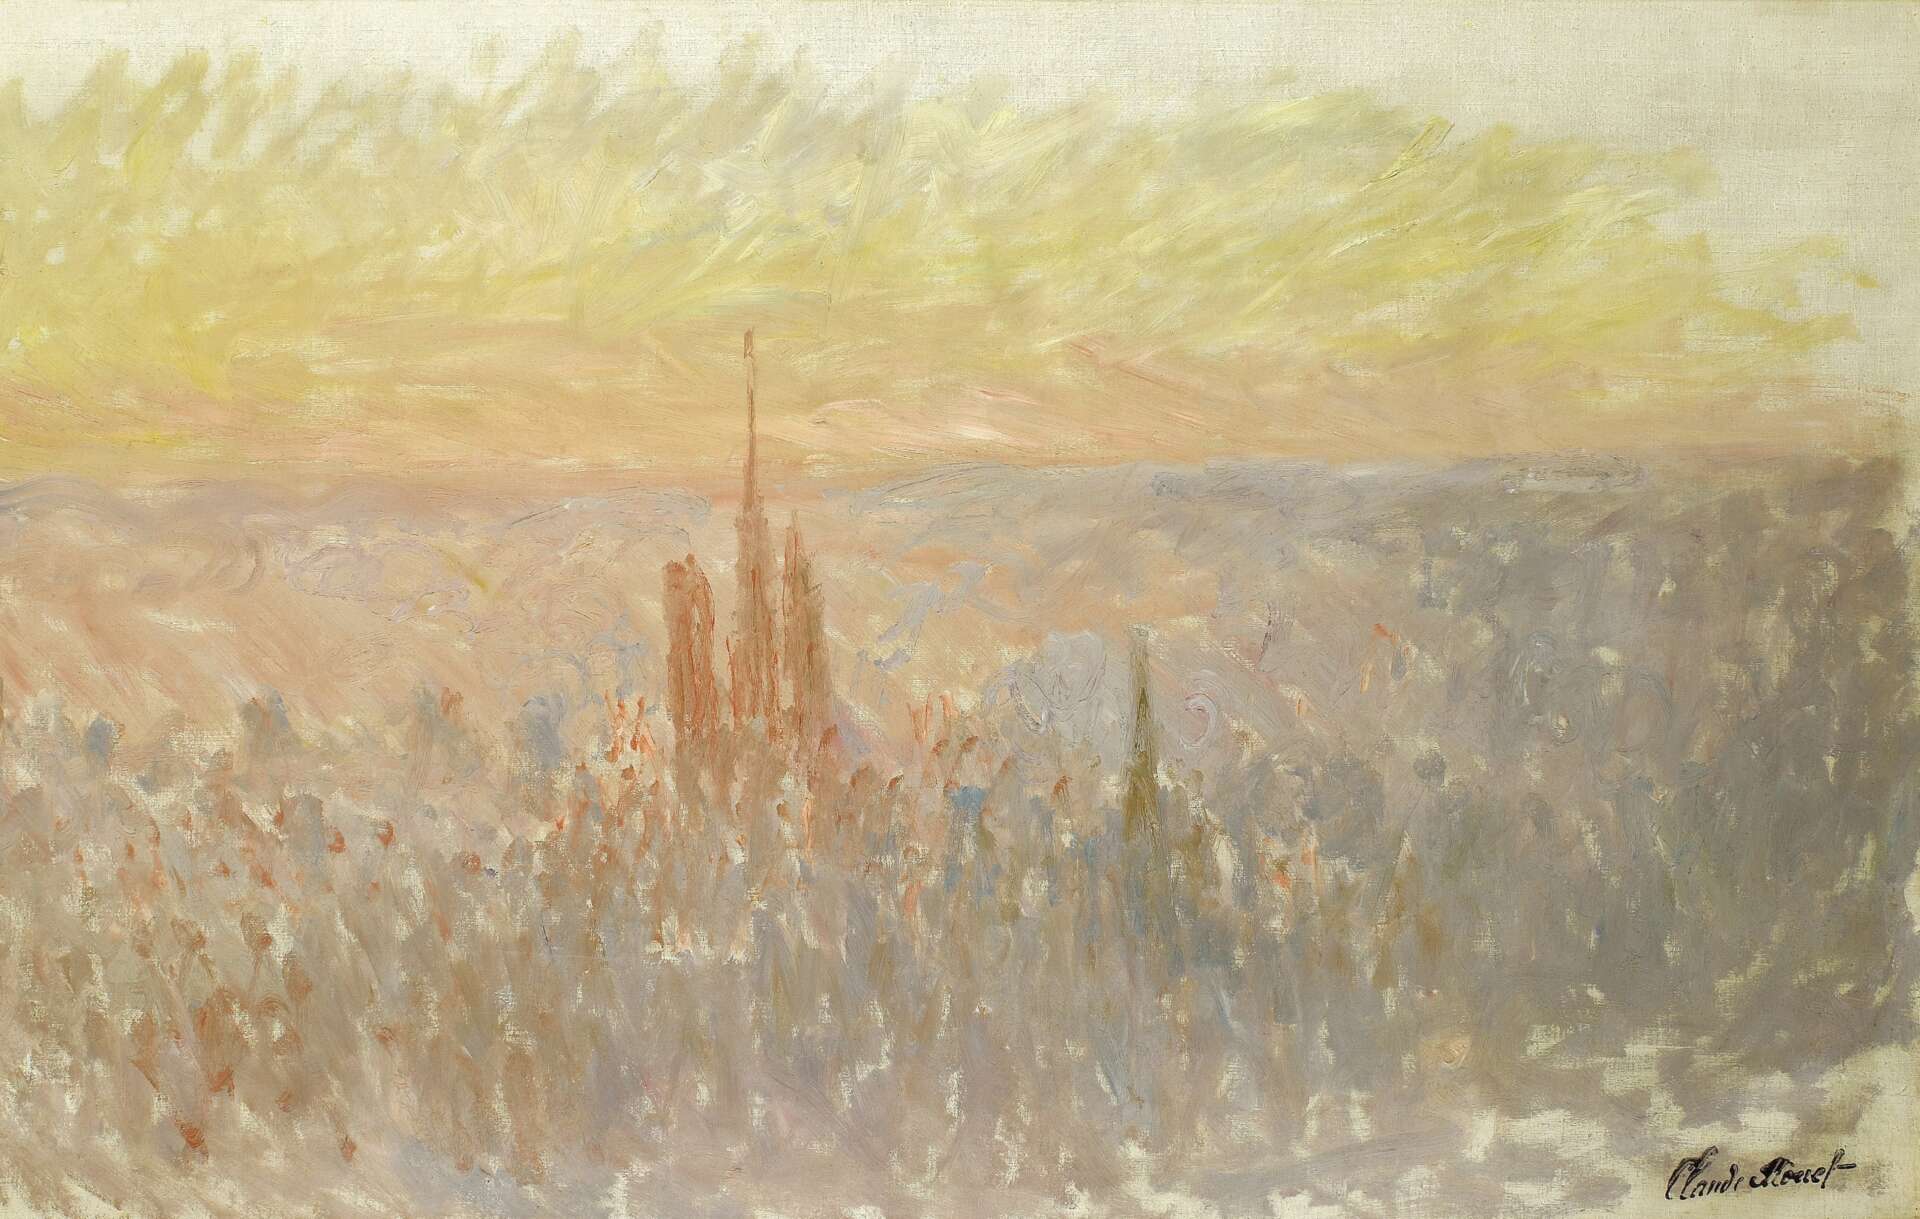 Vue de Rouen et de sa cathédrale, peinte par Claude Monet, © Musée des Beaux-Arts de Rouen